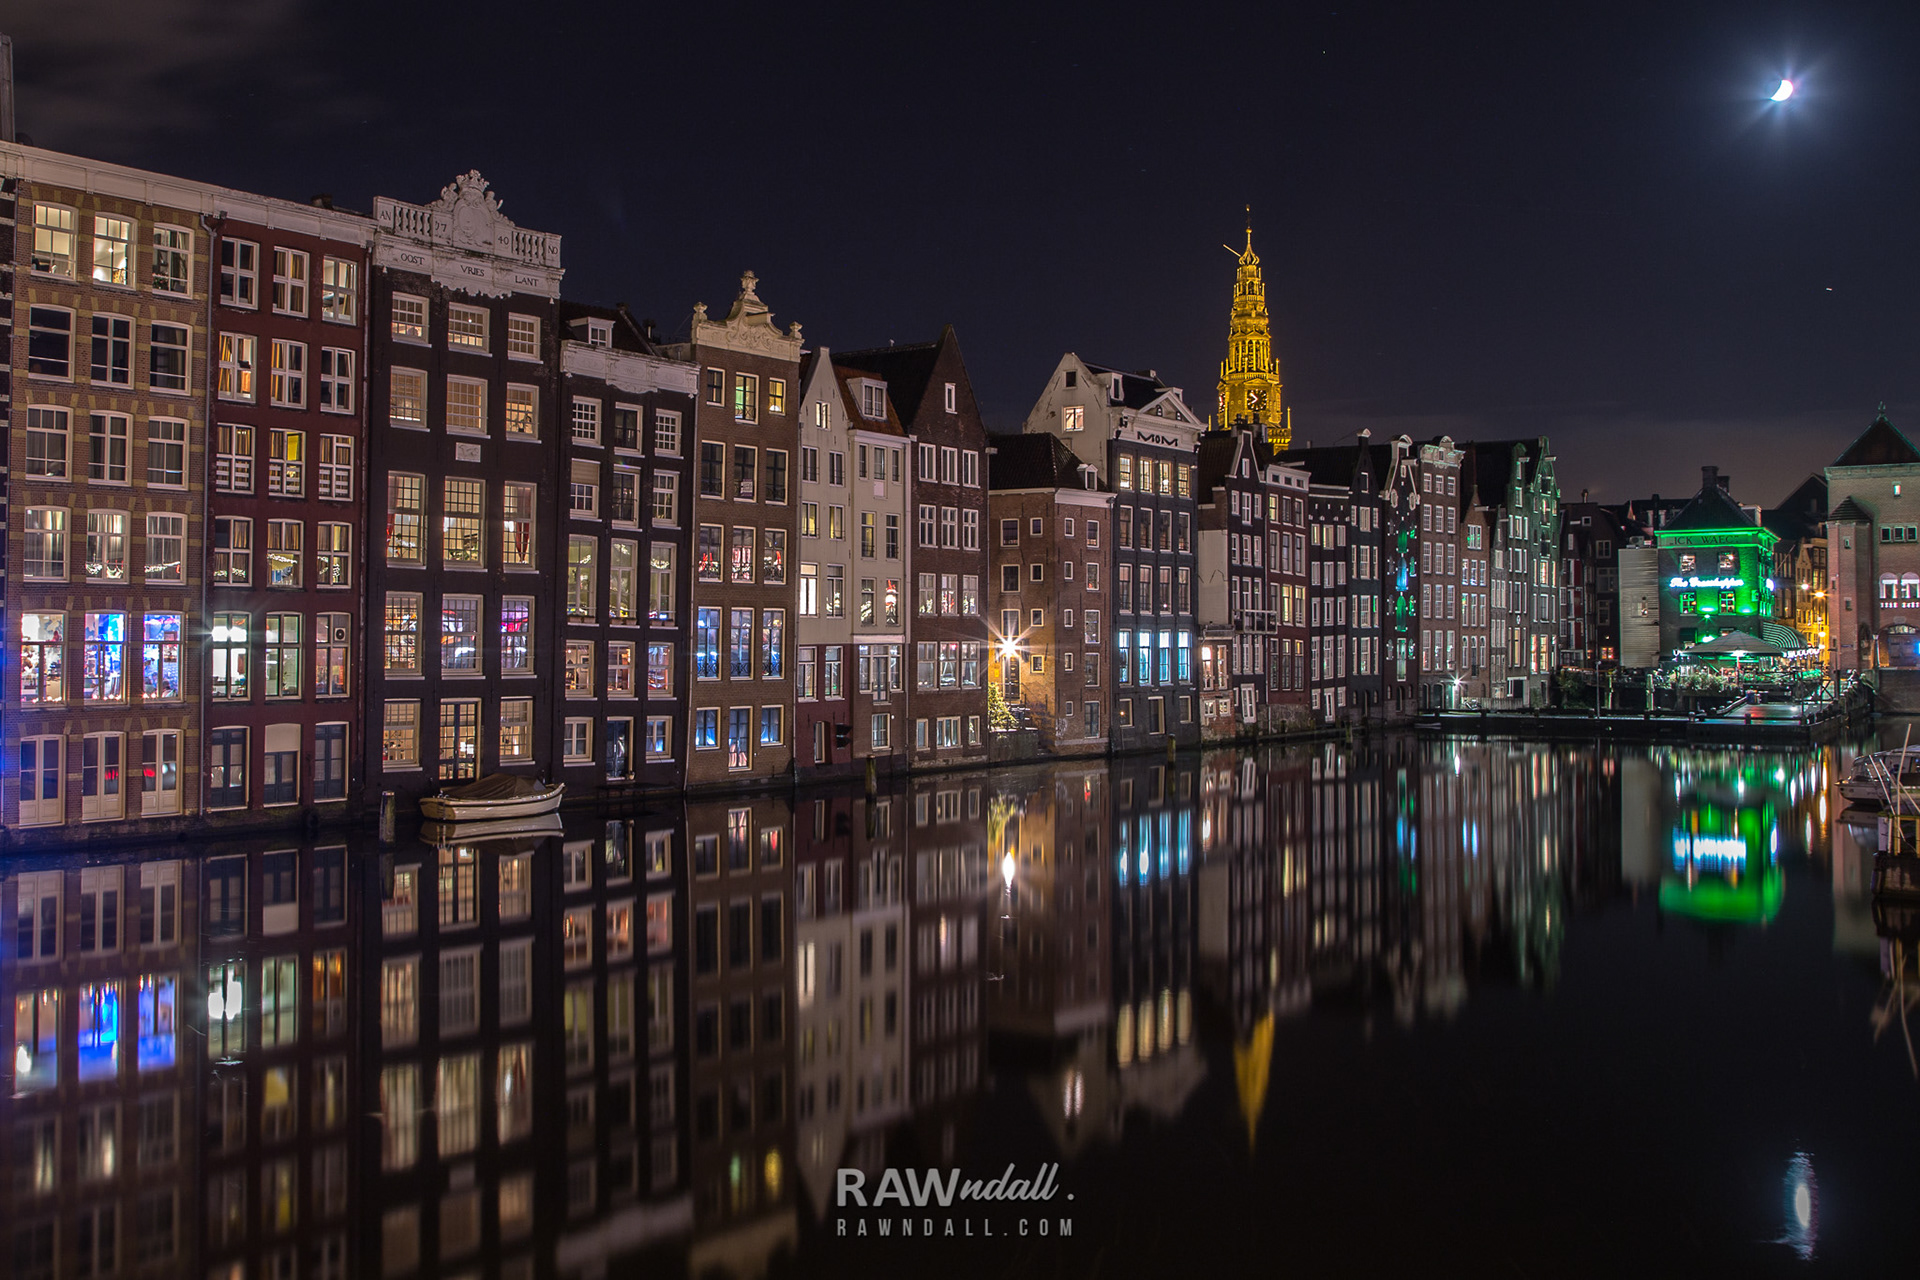 Ciudad de Amsterdan, edificios reflejados en la noche.